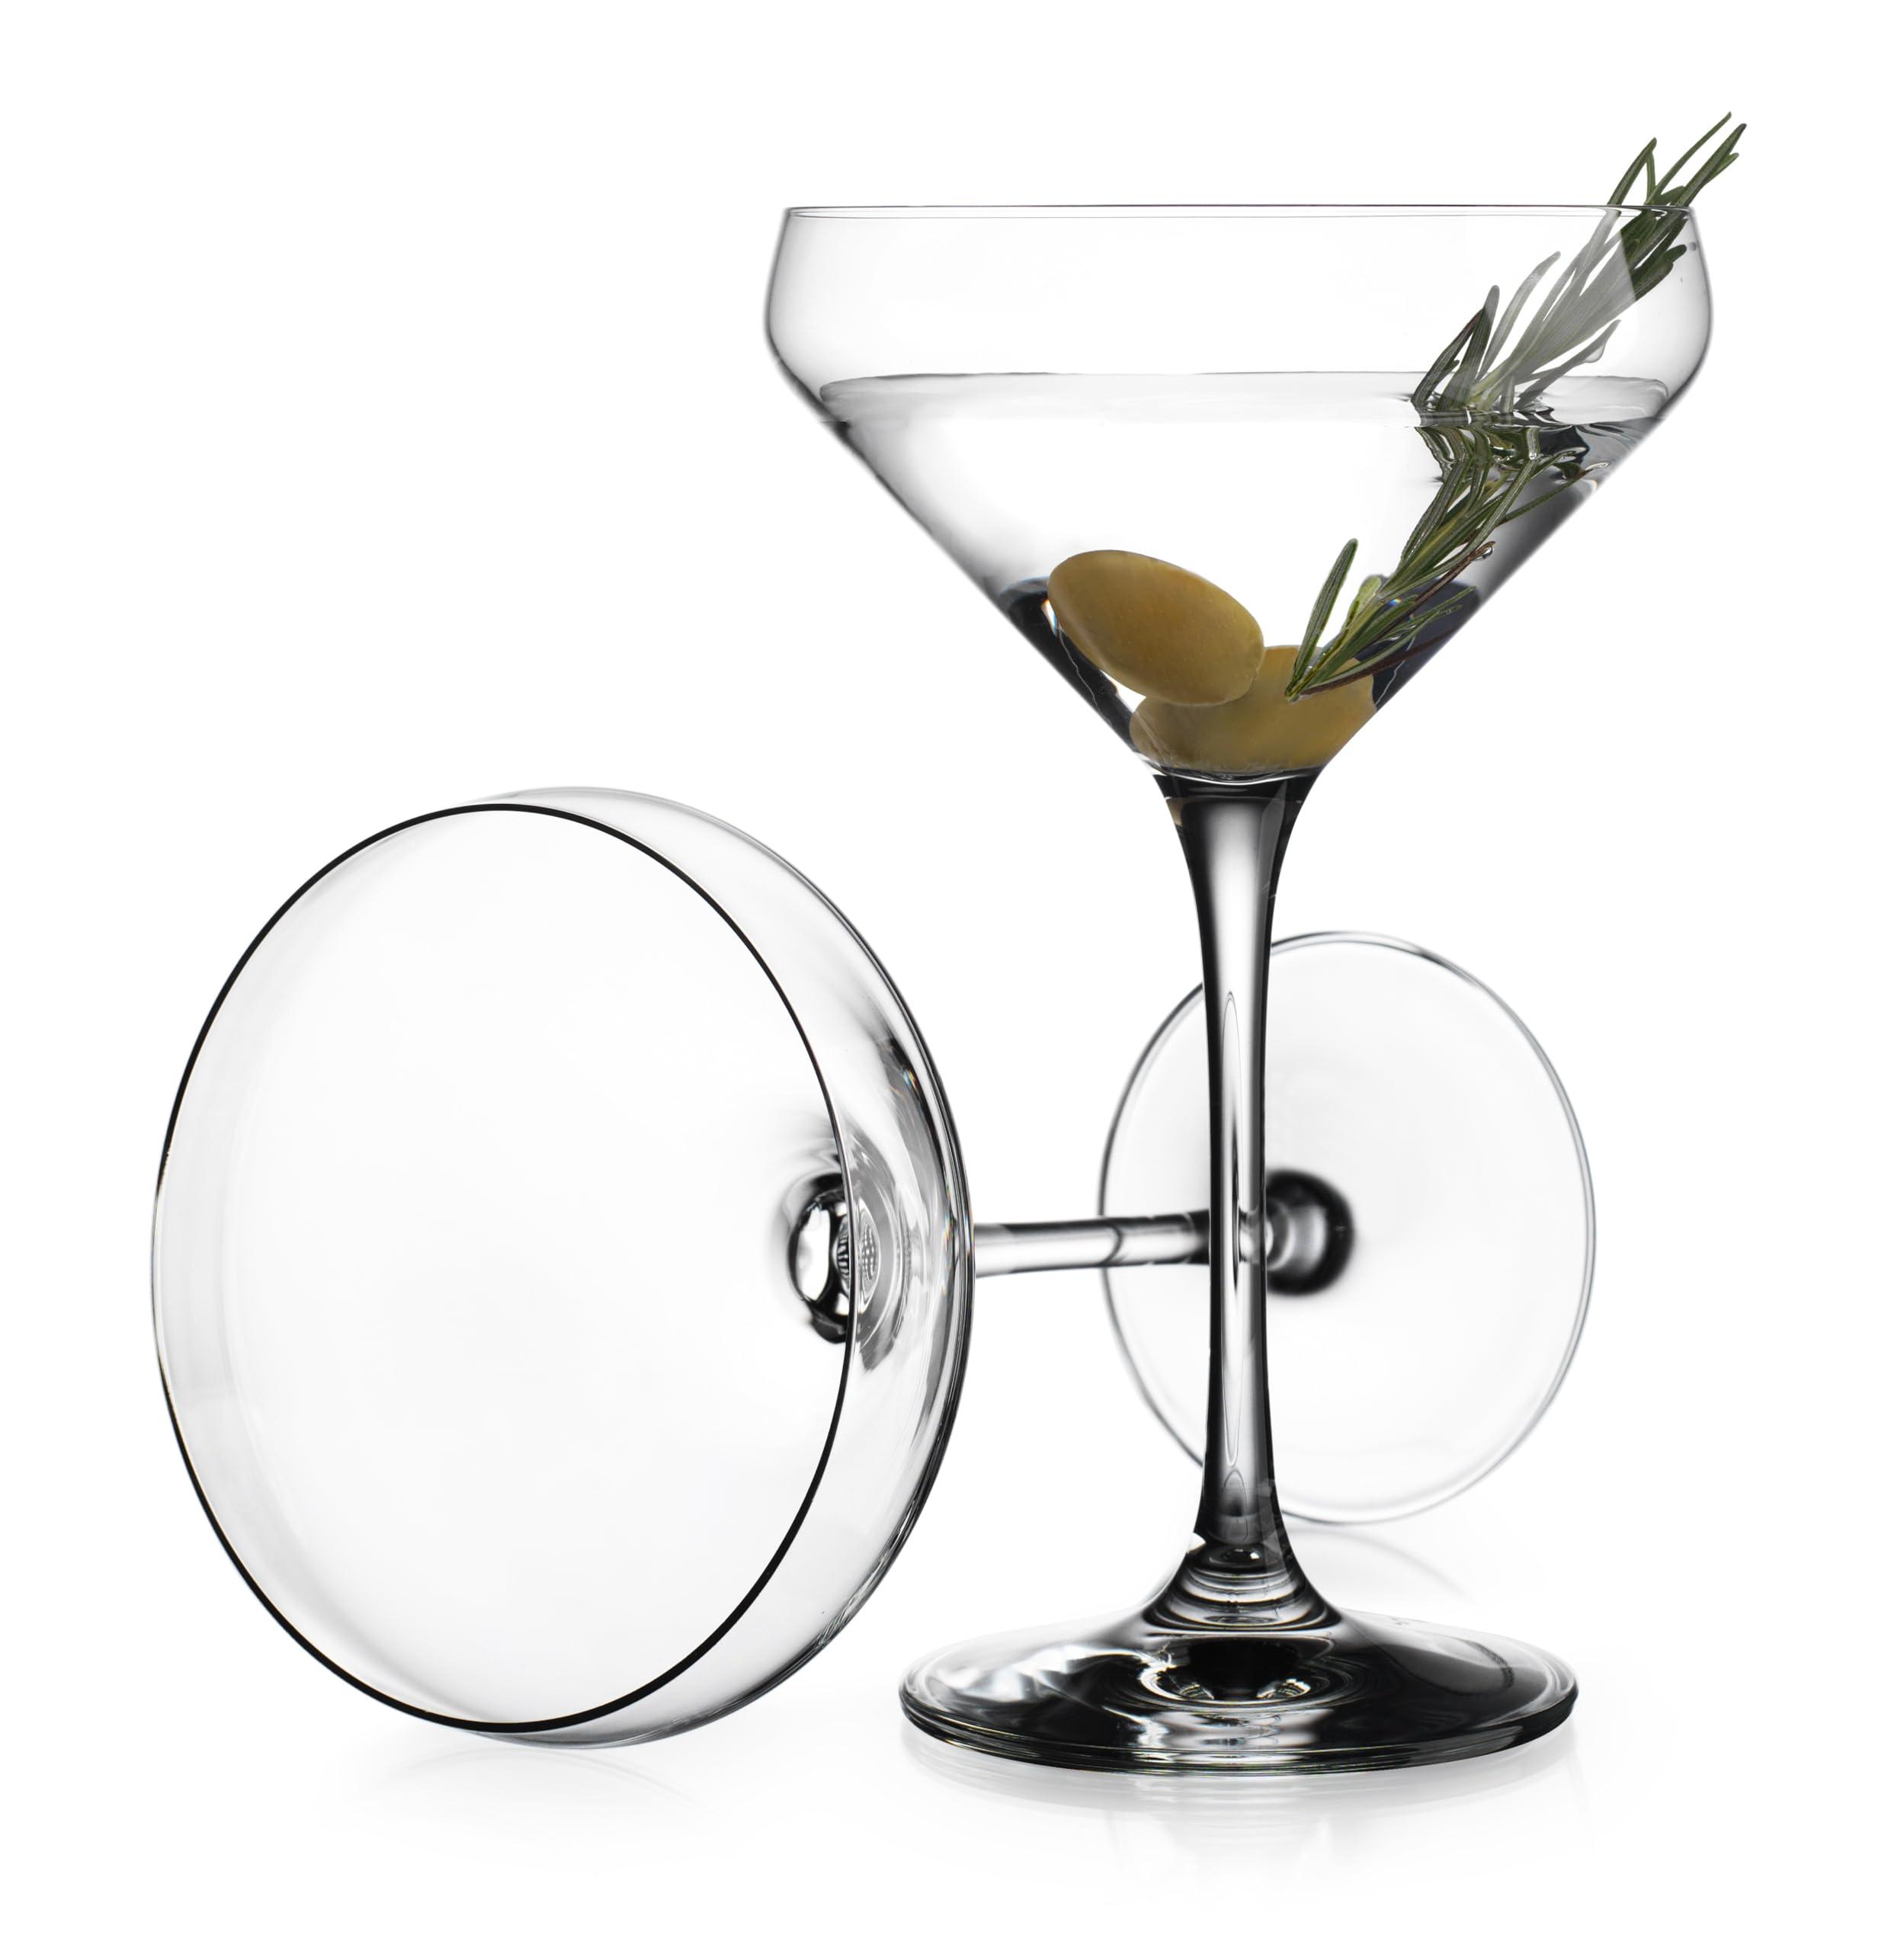 Glaver's Martini Glasses Set of 4 Cocktail Glasses, 10.5 Ounce Stemmed Margarita Glasses, for Bar, Martinis, Cosmopolitan, Gimlet, Elegant Packaging